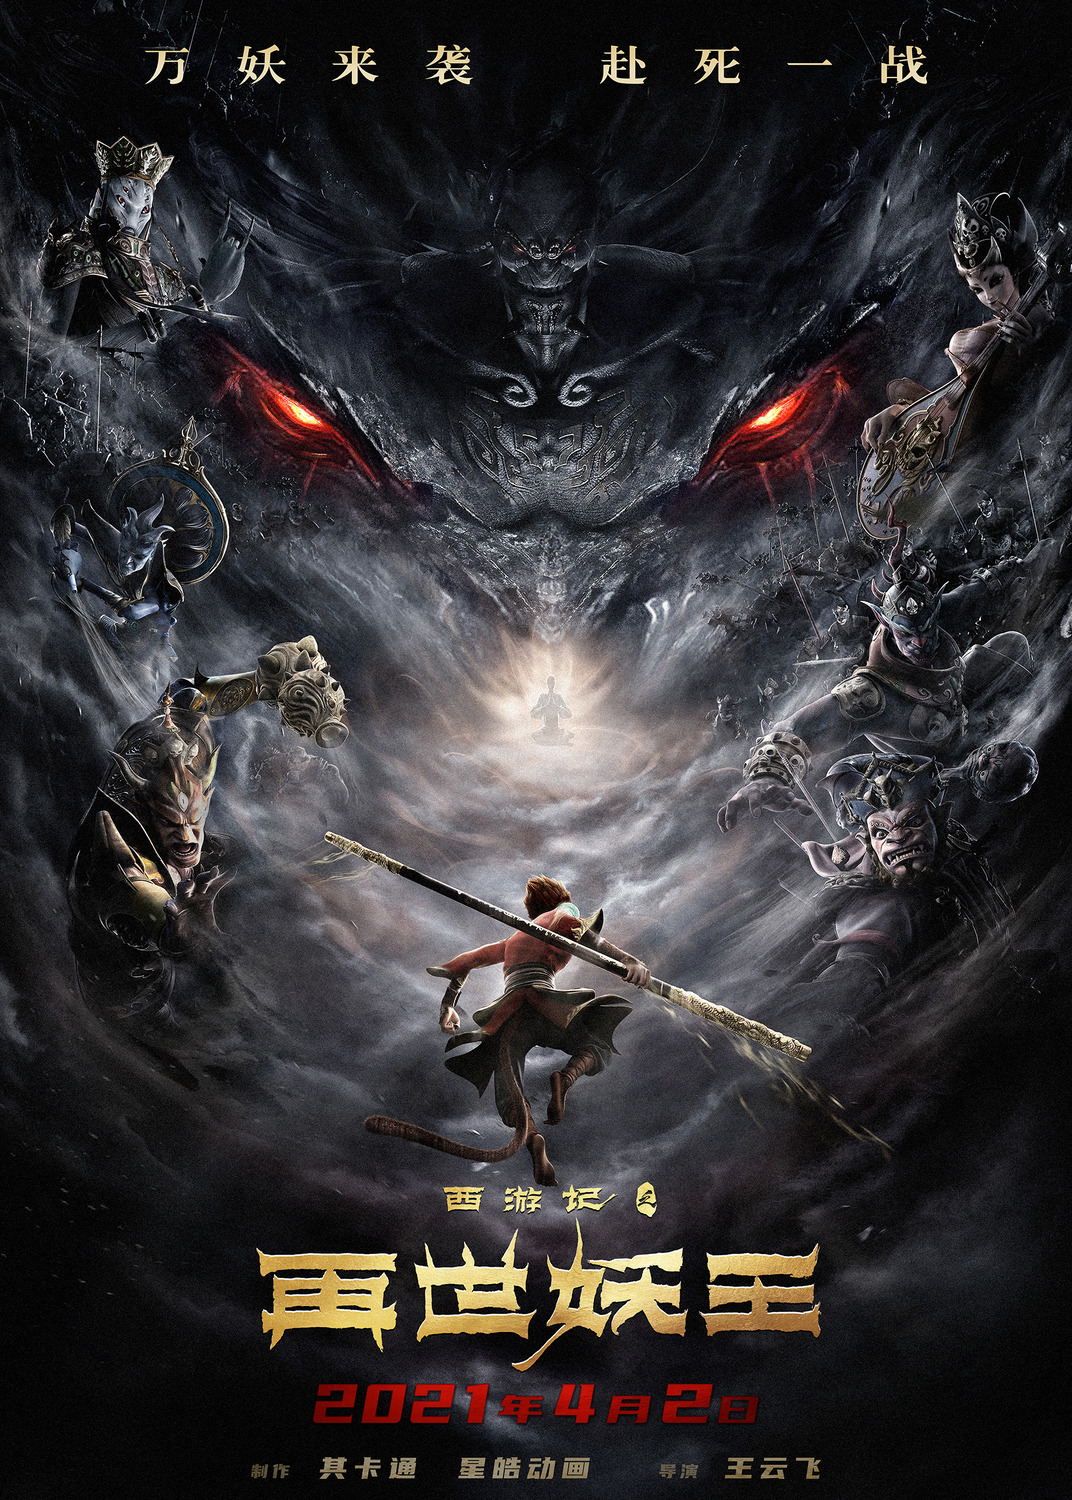 Extra Large Movie Poster Image for Xi You Ji Zhi Zai Shi Yao Wang (#2 of 21)